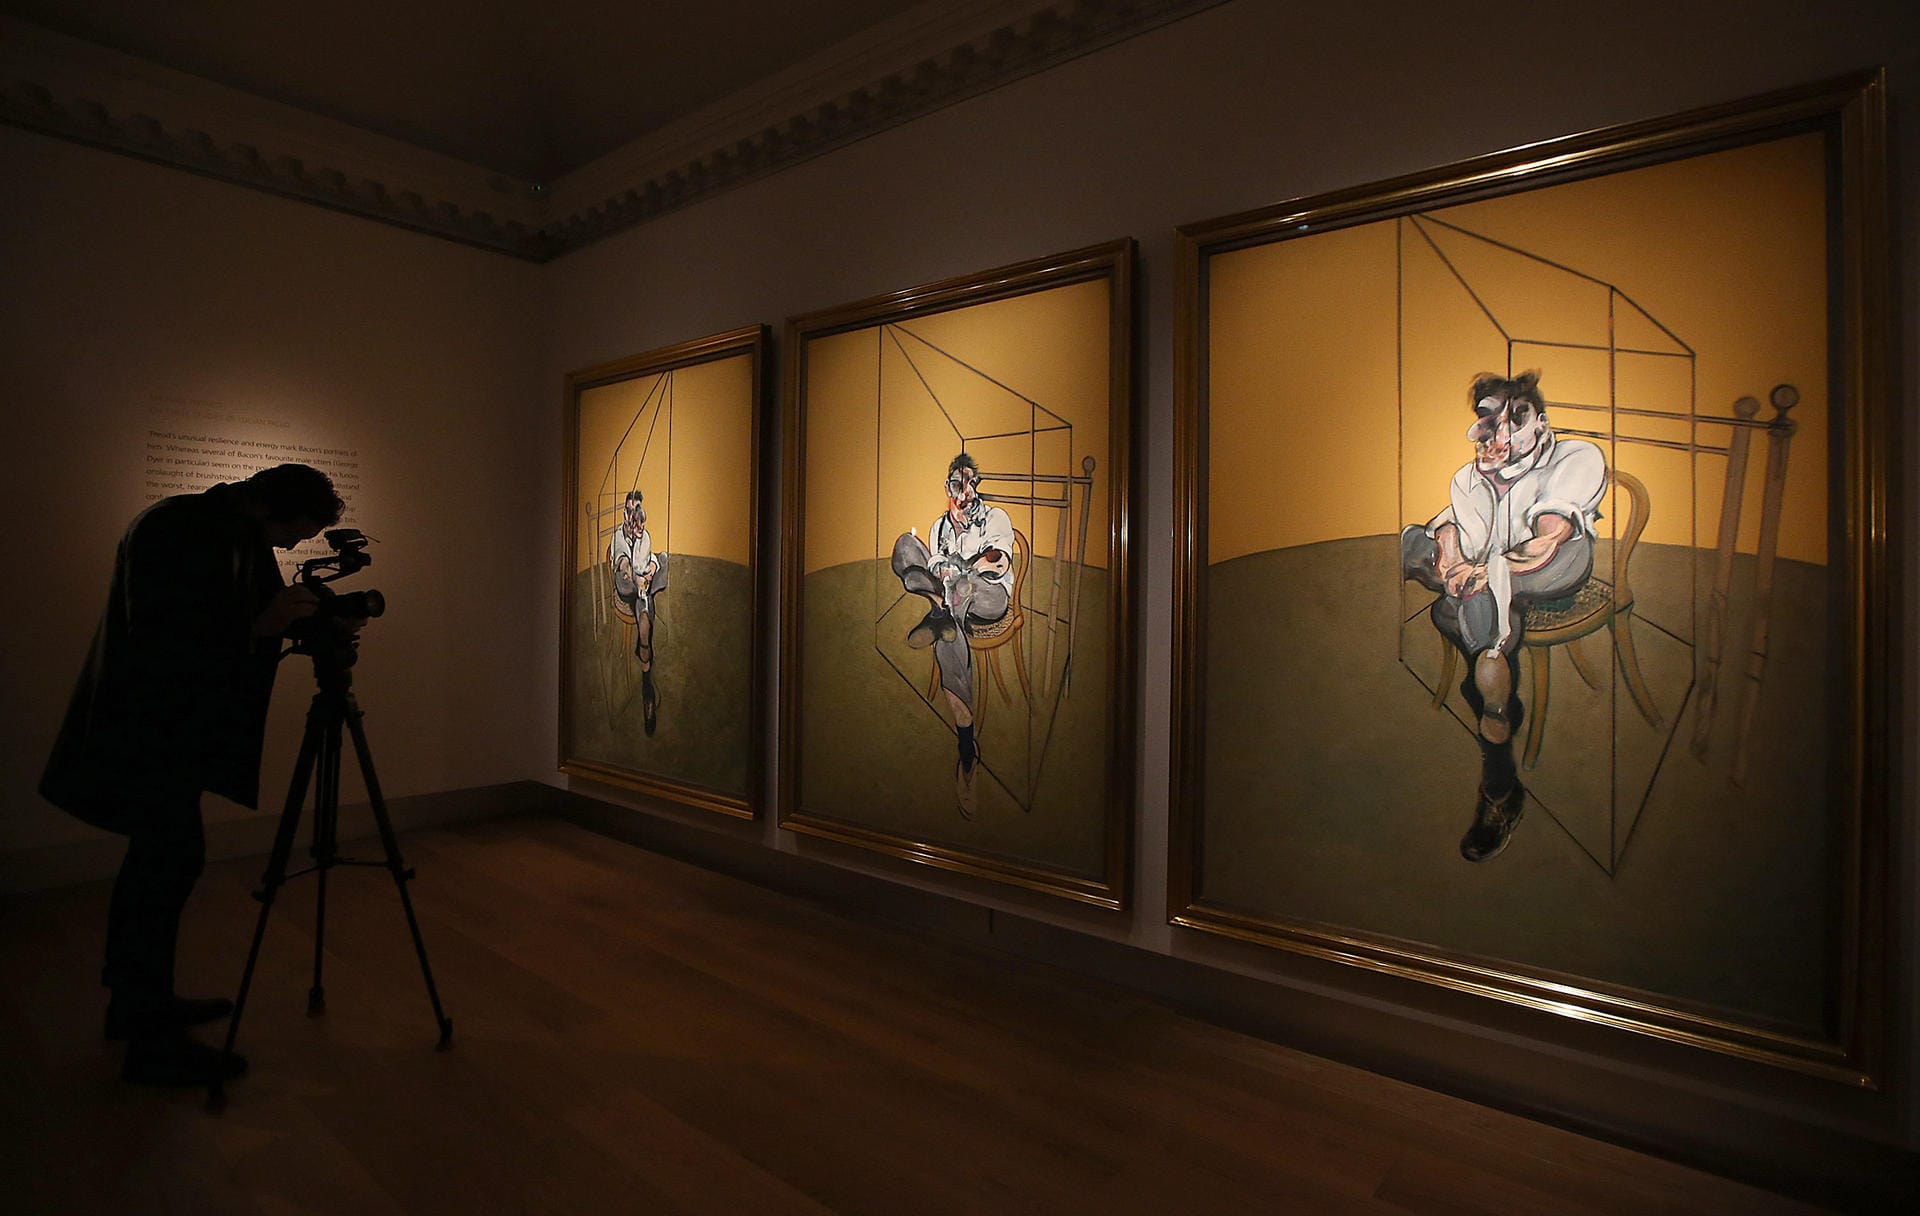 Francis Bacon (Platz 5): "Three Studies of Lucien Freud" aus dem Jahr 1969 ist vom britischen Maler, der zu den größten Malern des 20. Jahrhunderts zählt. 2013 gingen die Kunstwerke für 142,4 Millionen Dollar an einen unbekannten Käufer. Die Versteigerung fand bei Christie's statt.